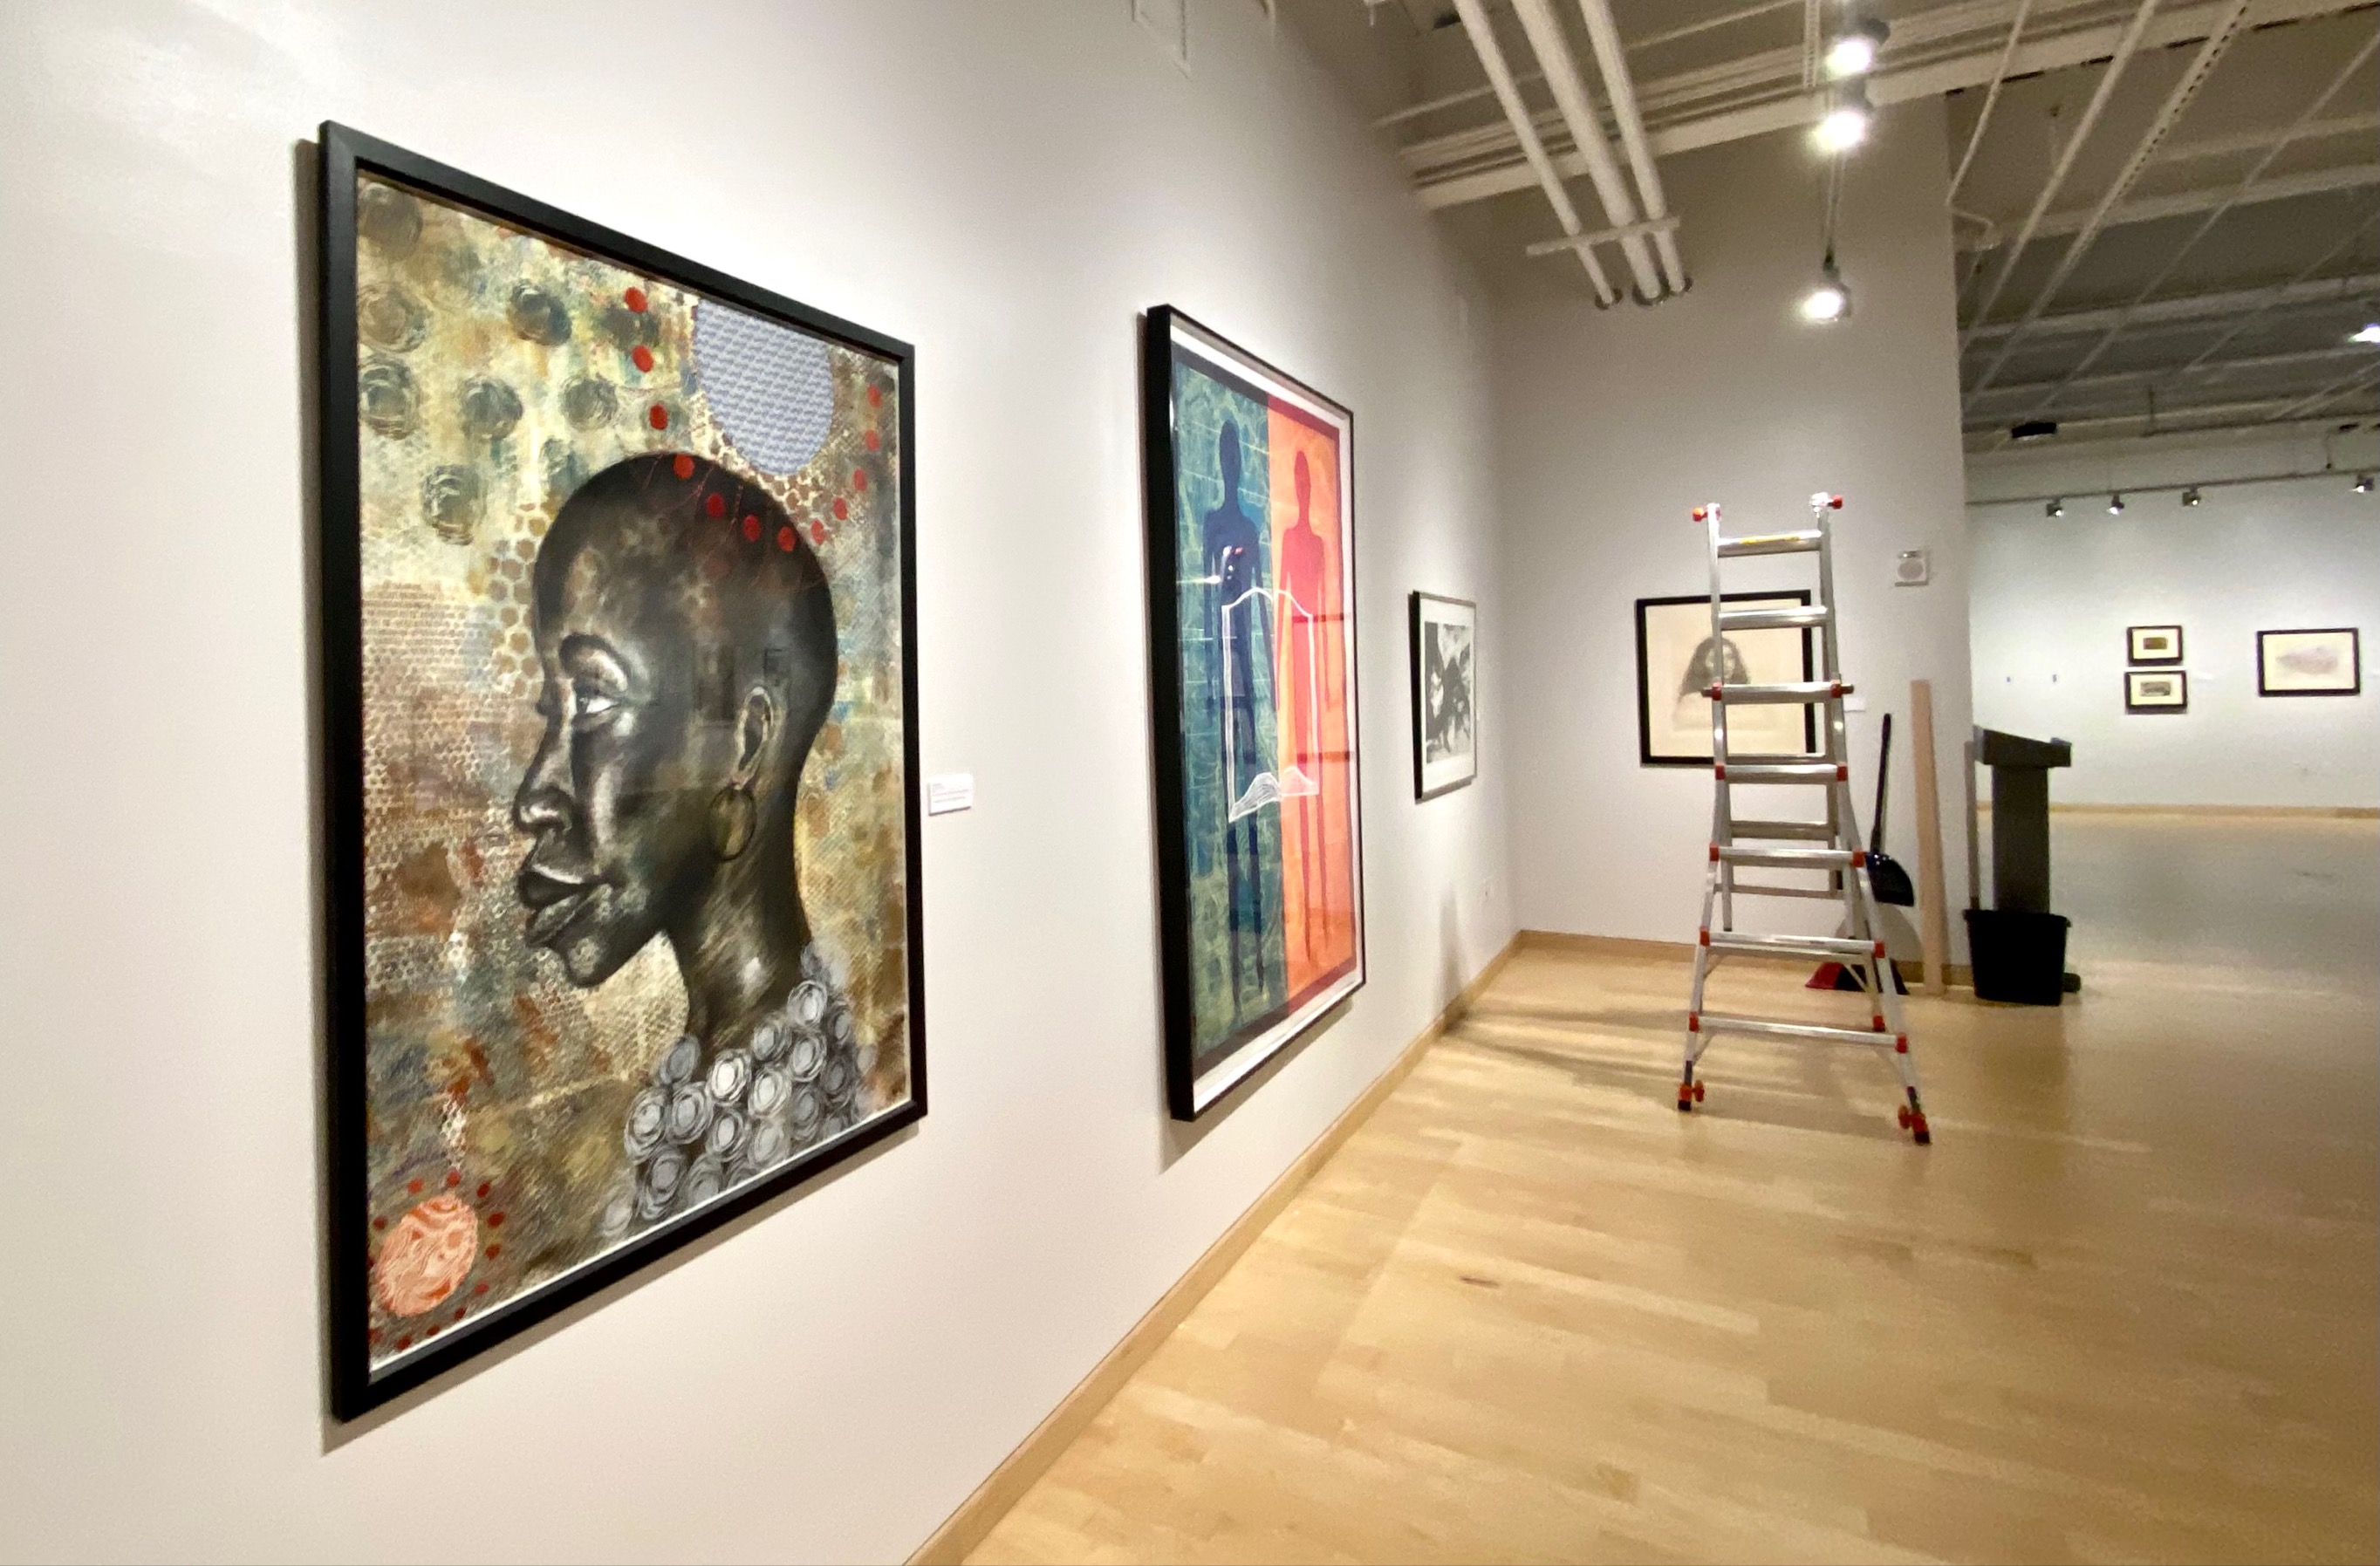 UAFS Gallery of Art & Design showcase "Through My Eyes," by Delita Martin.